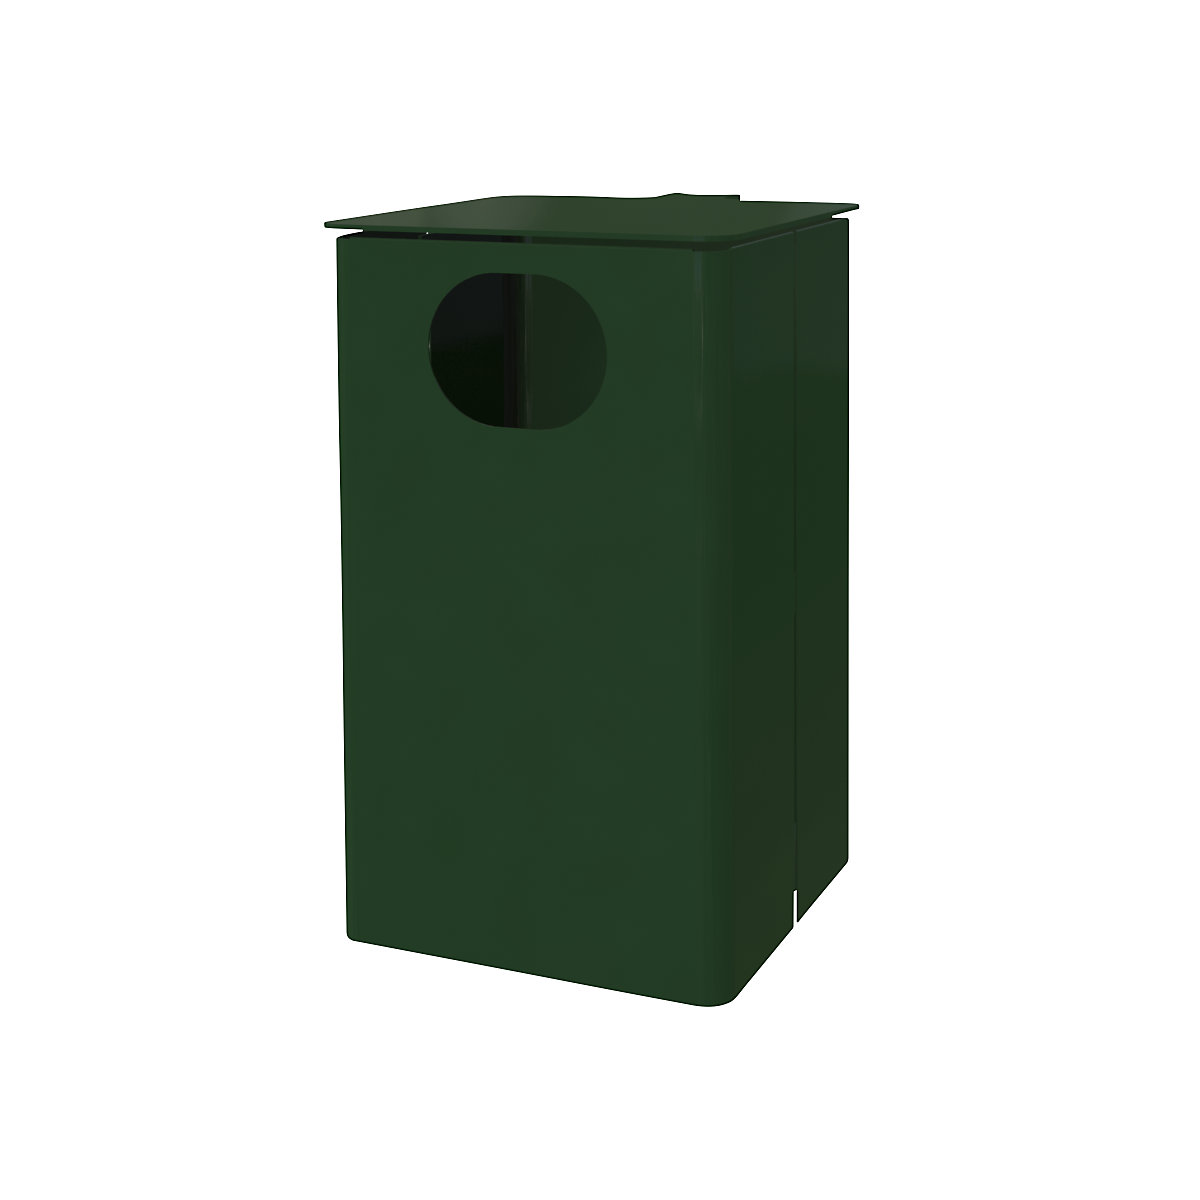 Außen-Abfallbehälter, Volumen 35 l, HxBxT 537 x 325 x 388 mm, moosgrün